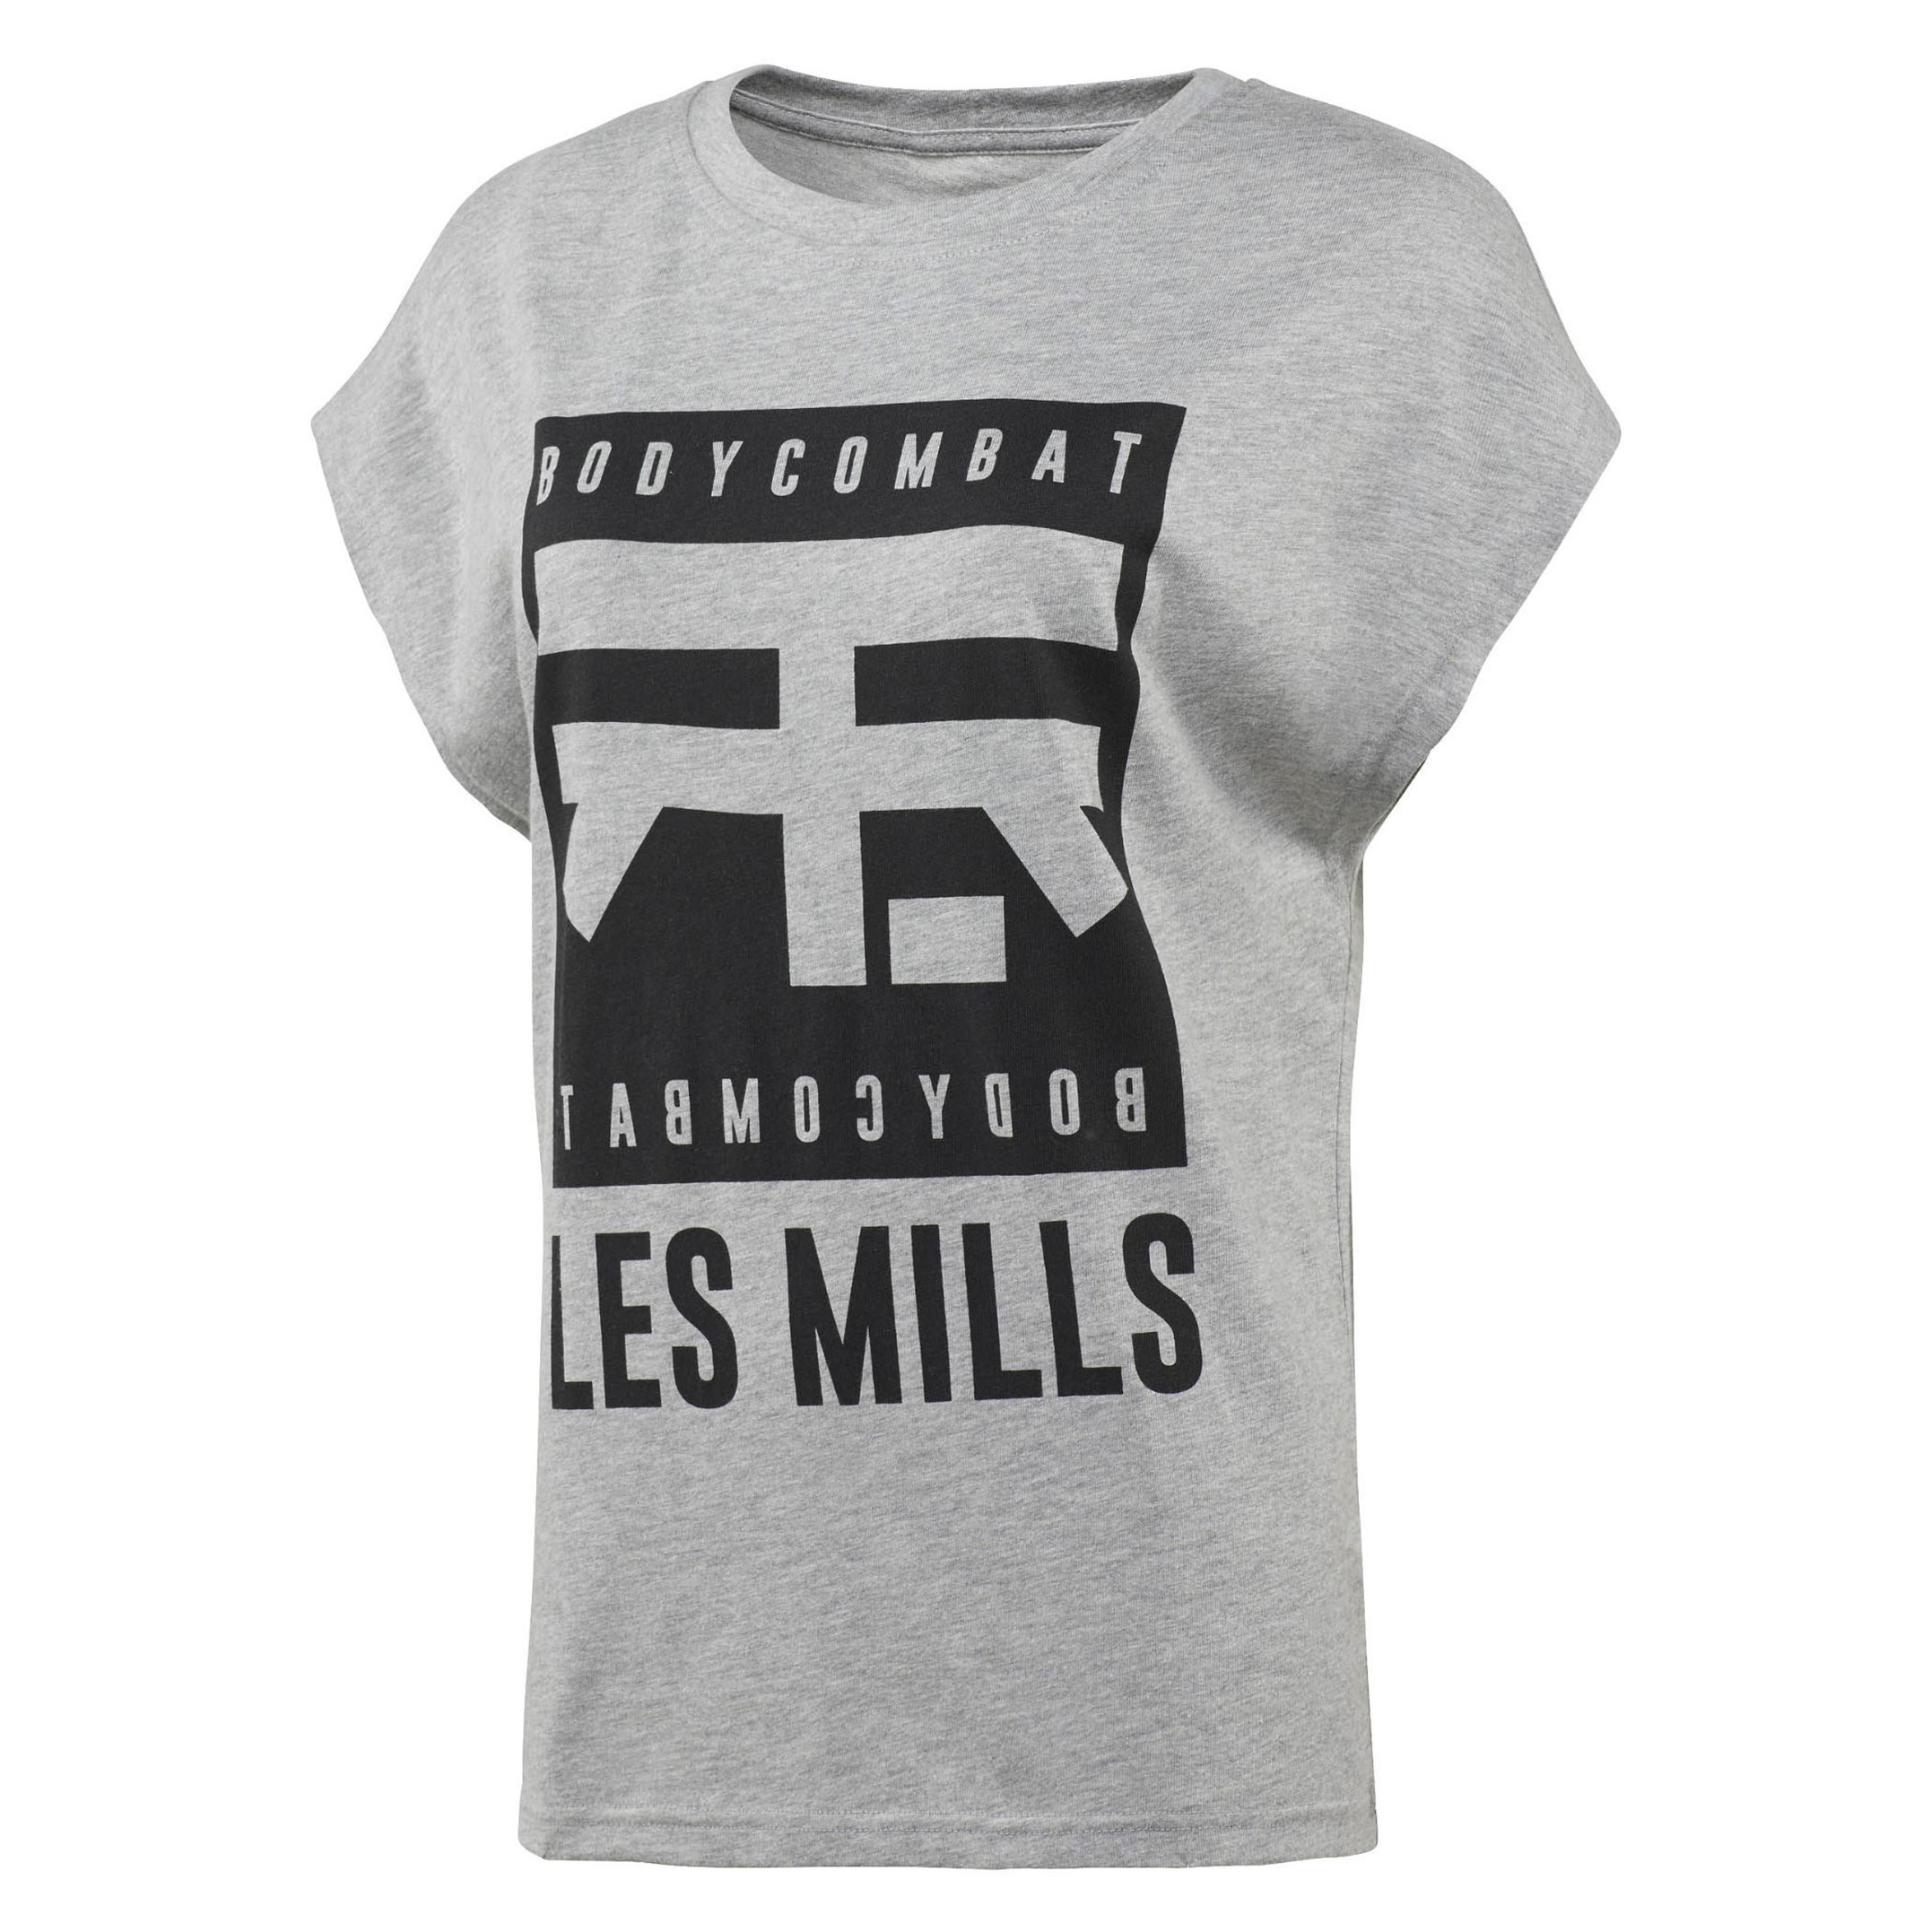 تی شرت ورزشی آستین کوتاه زنانه Les Mills BodyCombat - ریباک